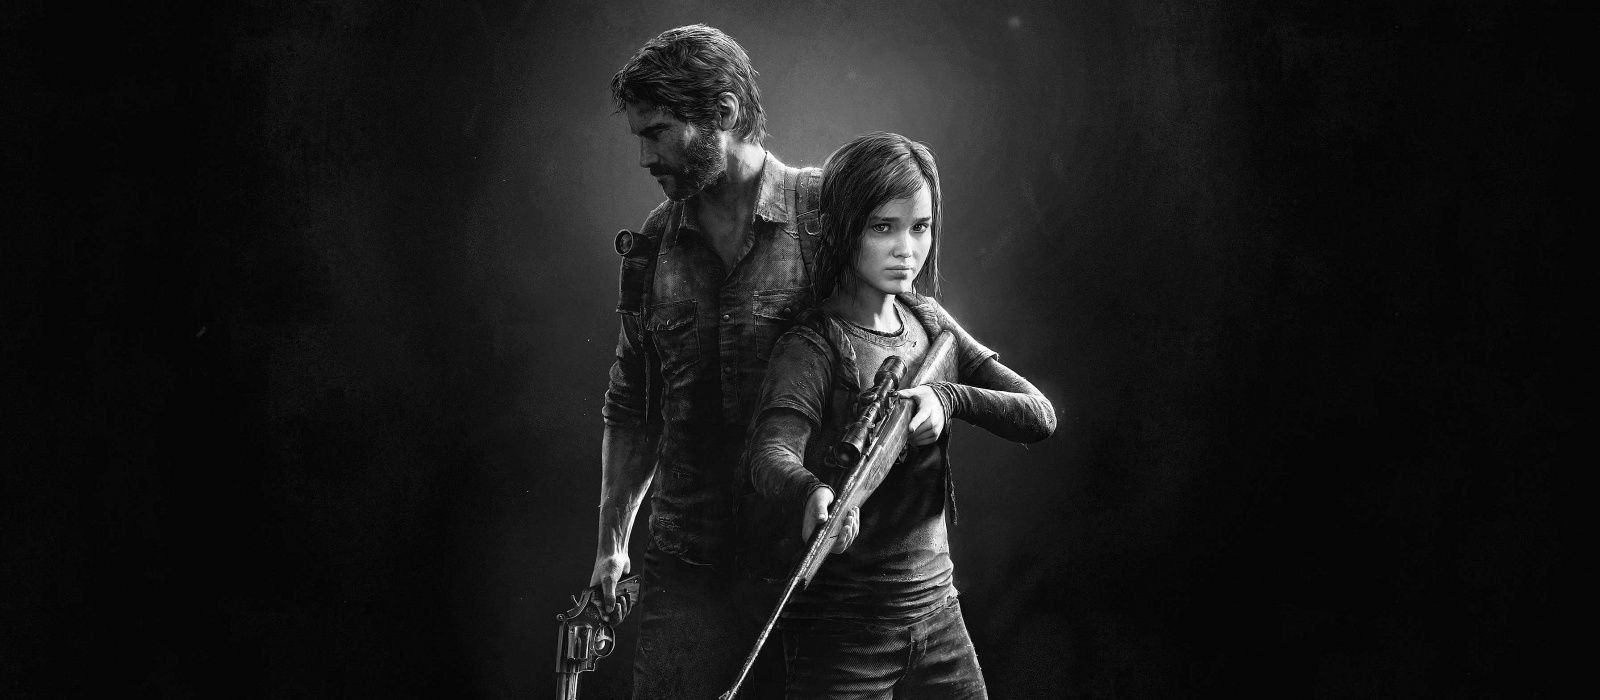 Cъёмки сериала The Last of Us от HBO начнутся 5 июля